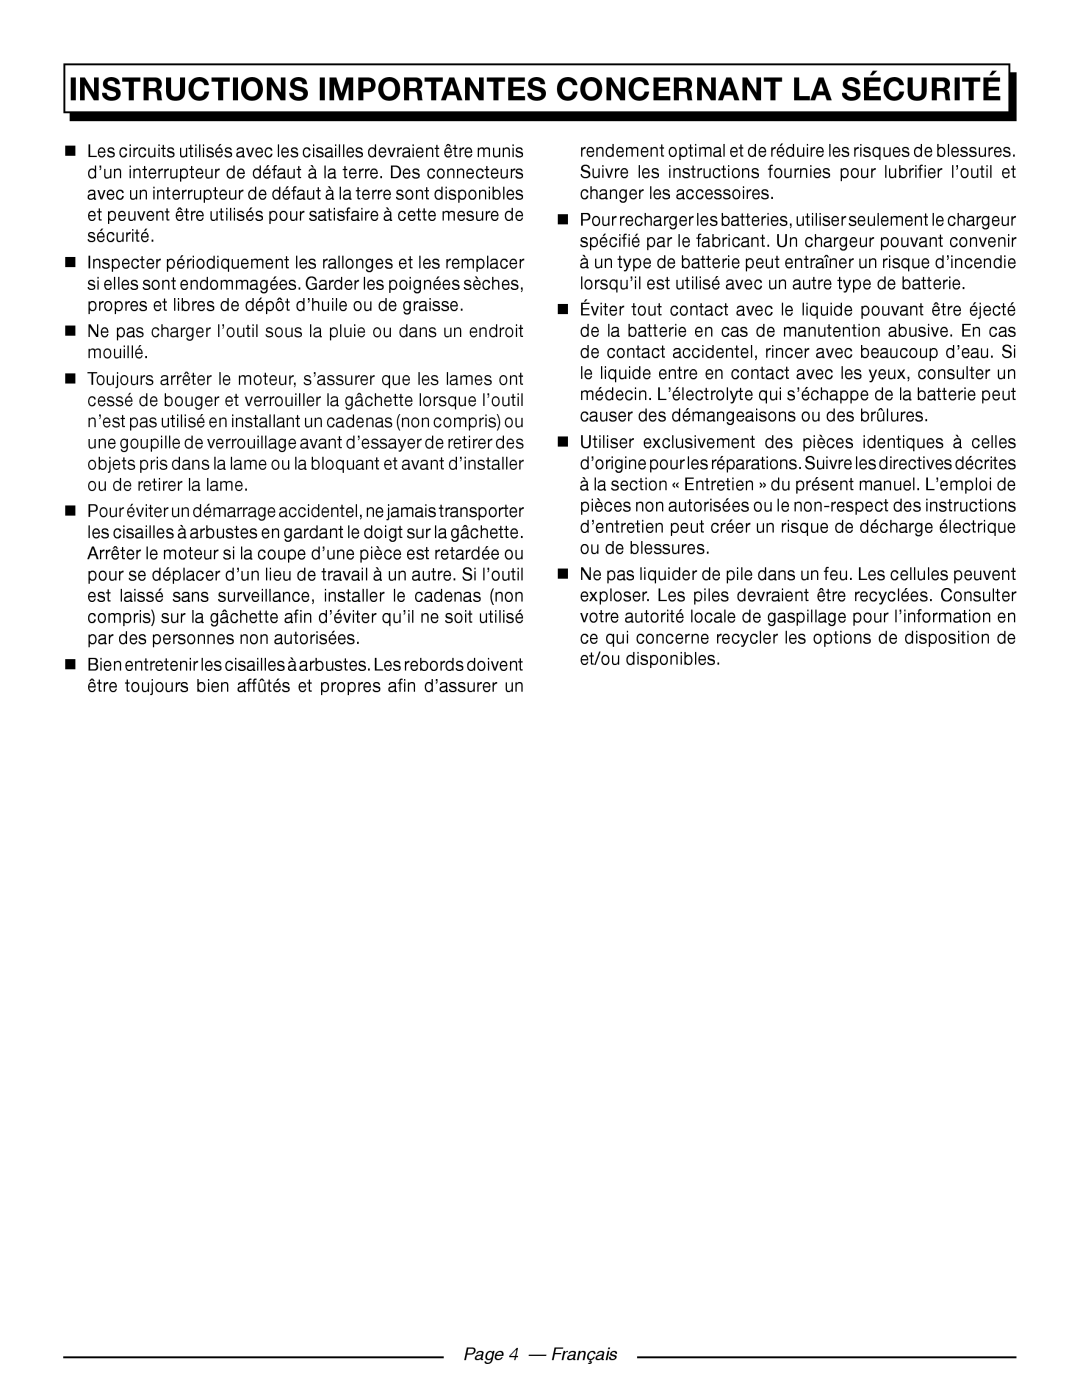 Homelite UT44171 manuel dutilisation Page 4 - Français, Instructions importantes concernant la sécurité 